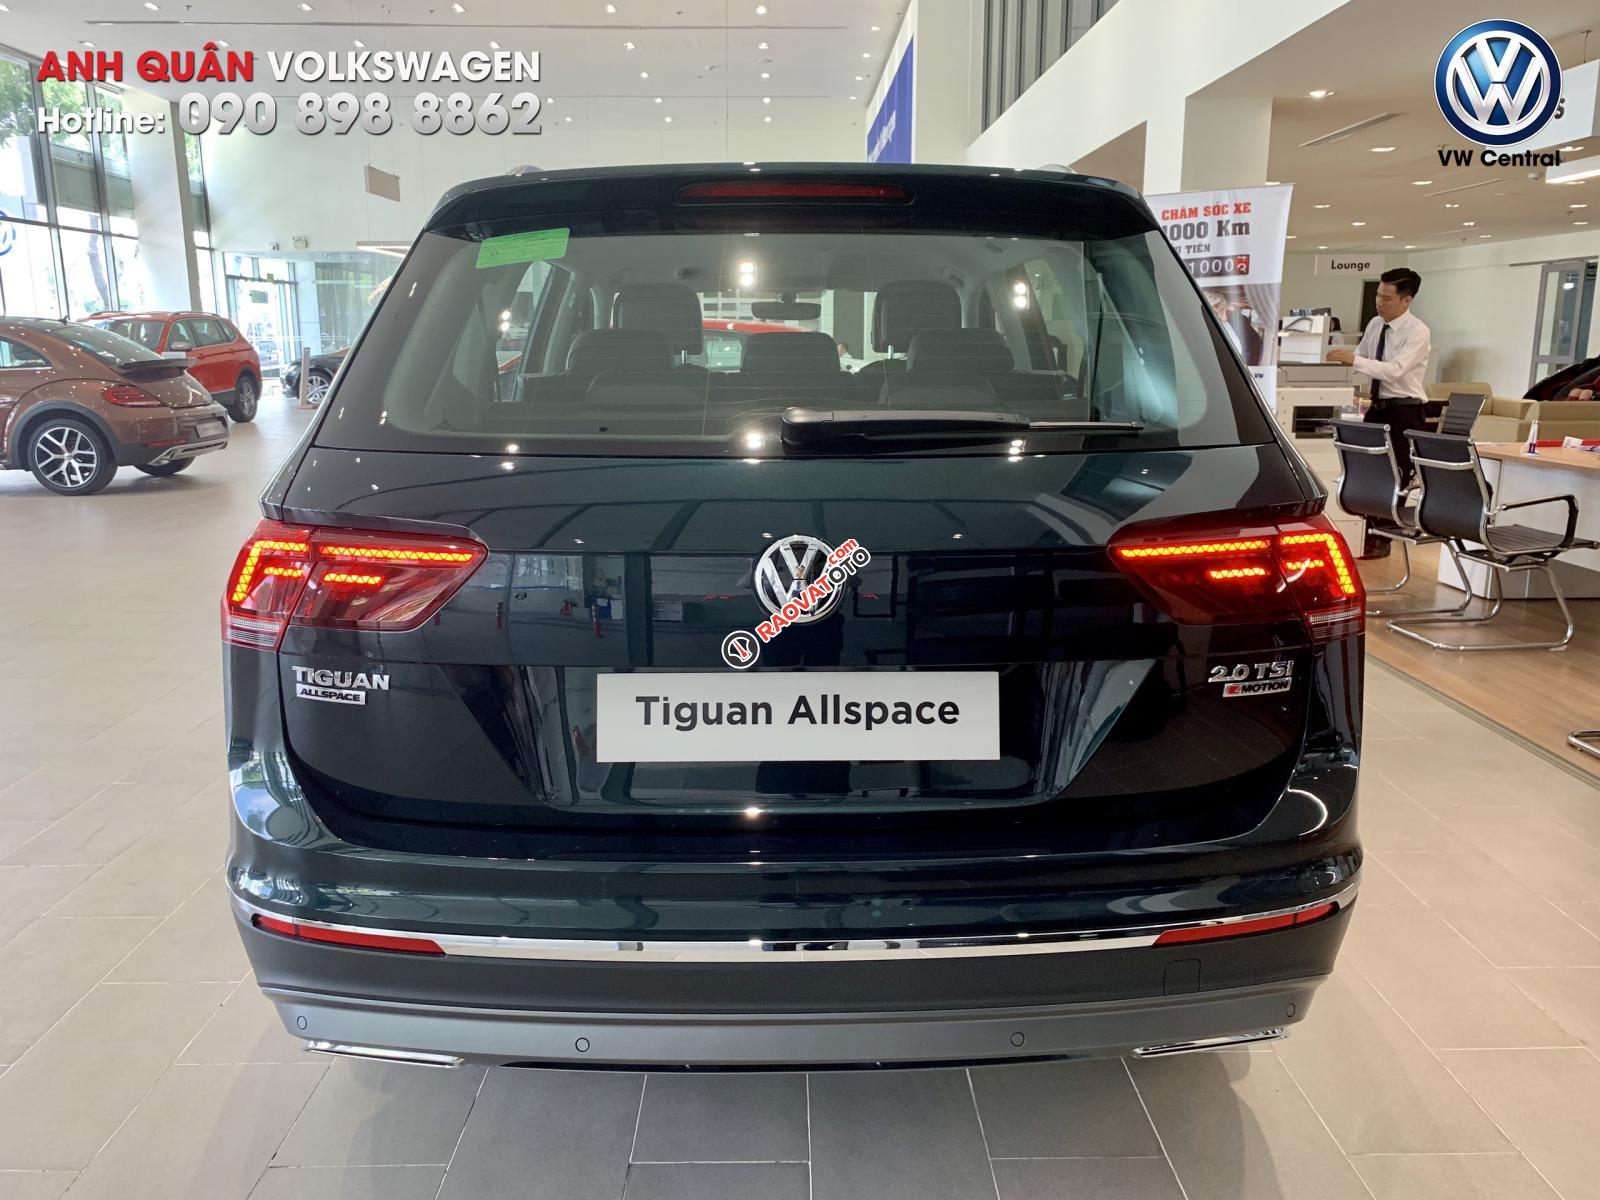 Tiguan Allspace 2019 - ưu đãi mua xe lên tới 160tr, trả góp 80%, hotline: 090-898-8862-15